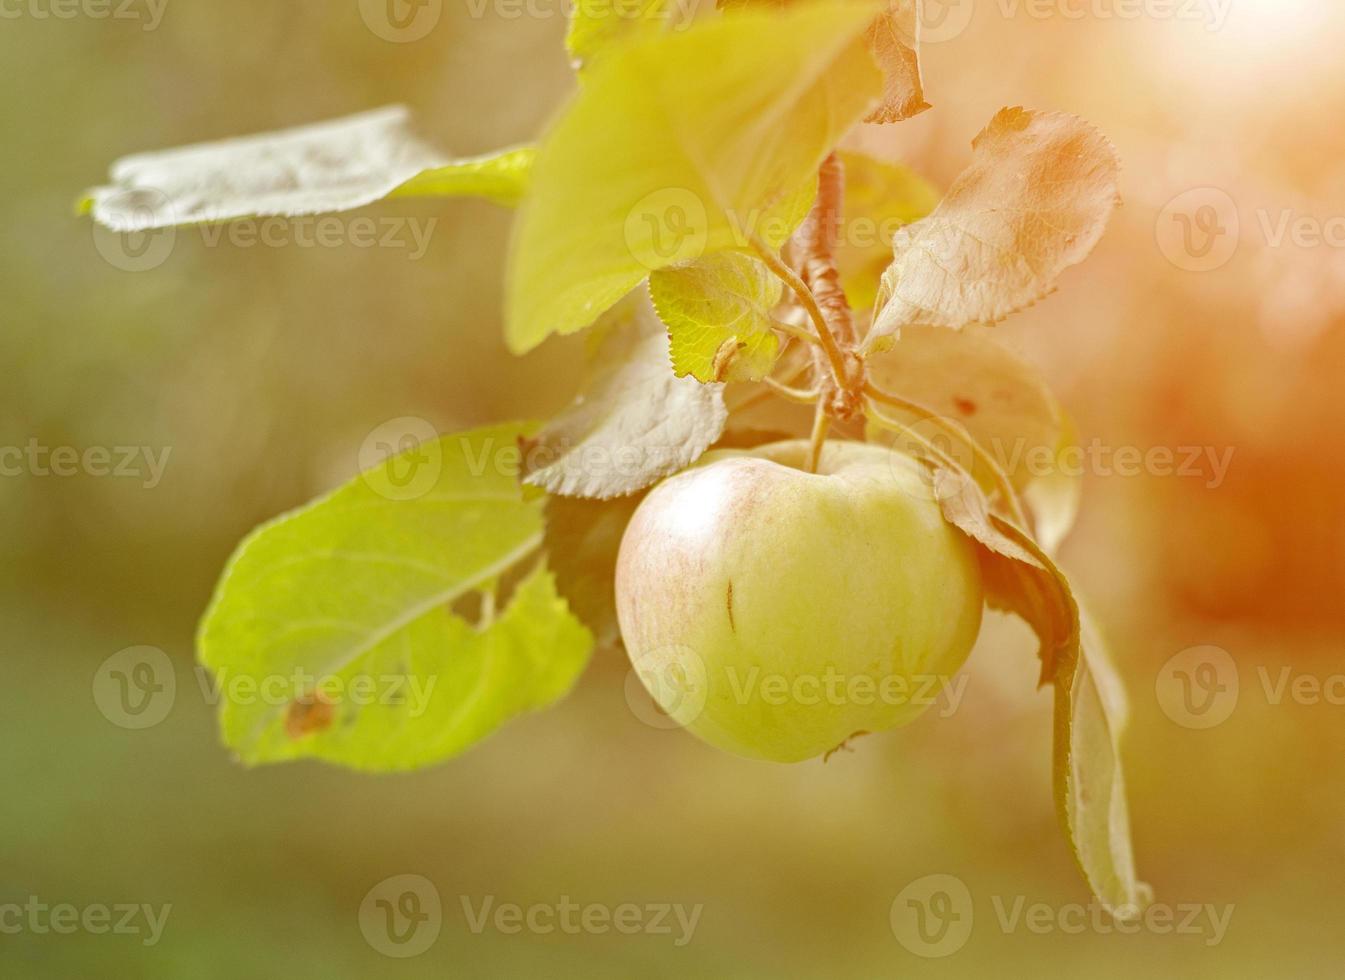 al atardecer, una manzana cuelga de una rama en el jardín. foto